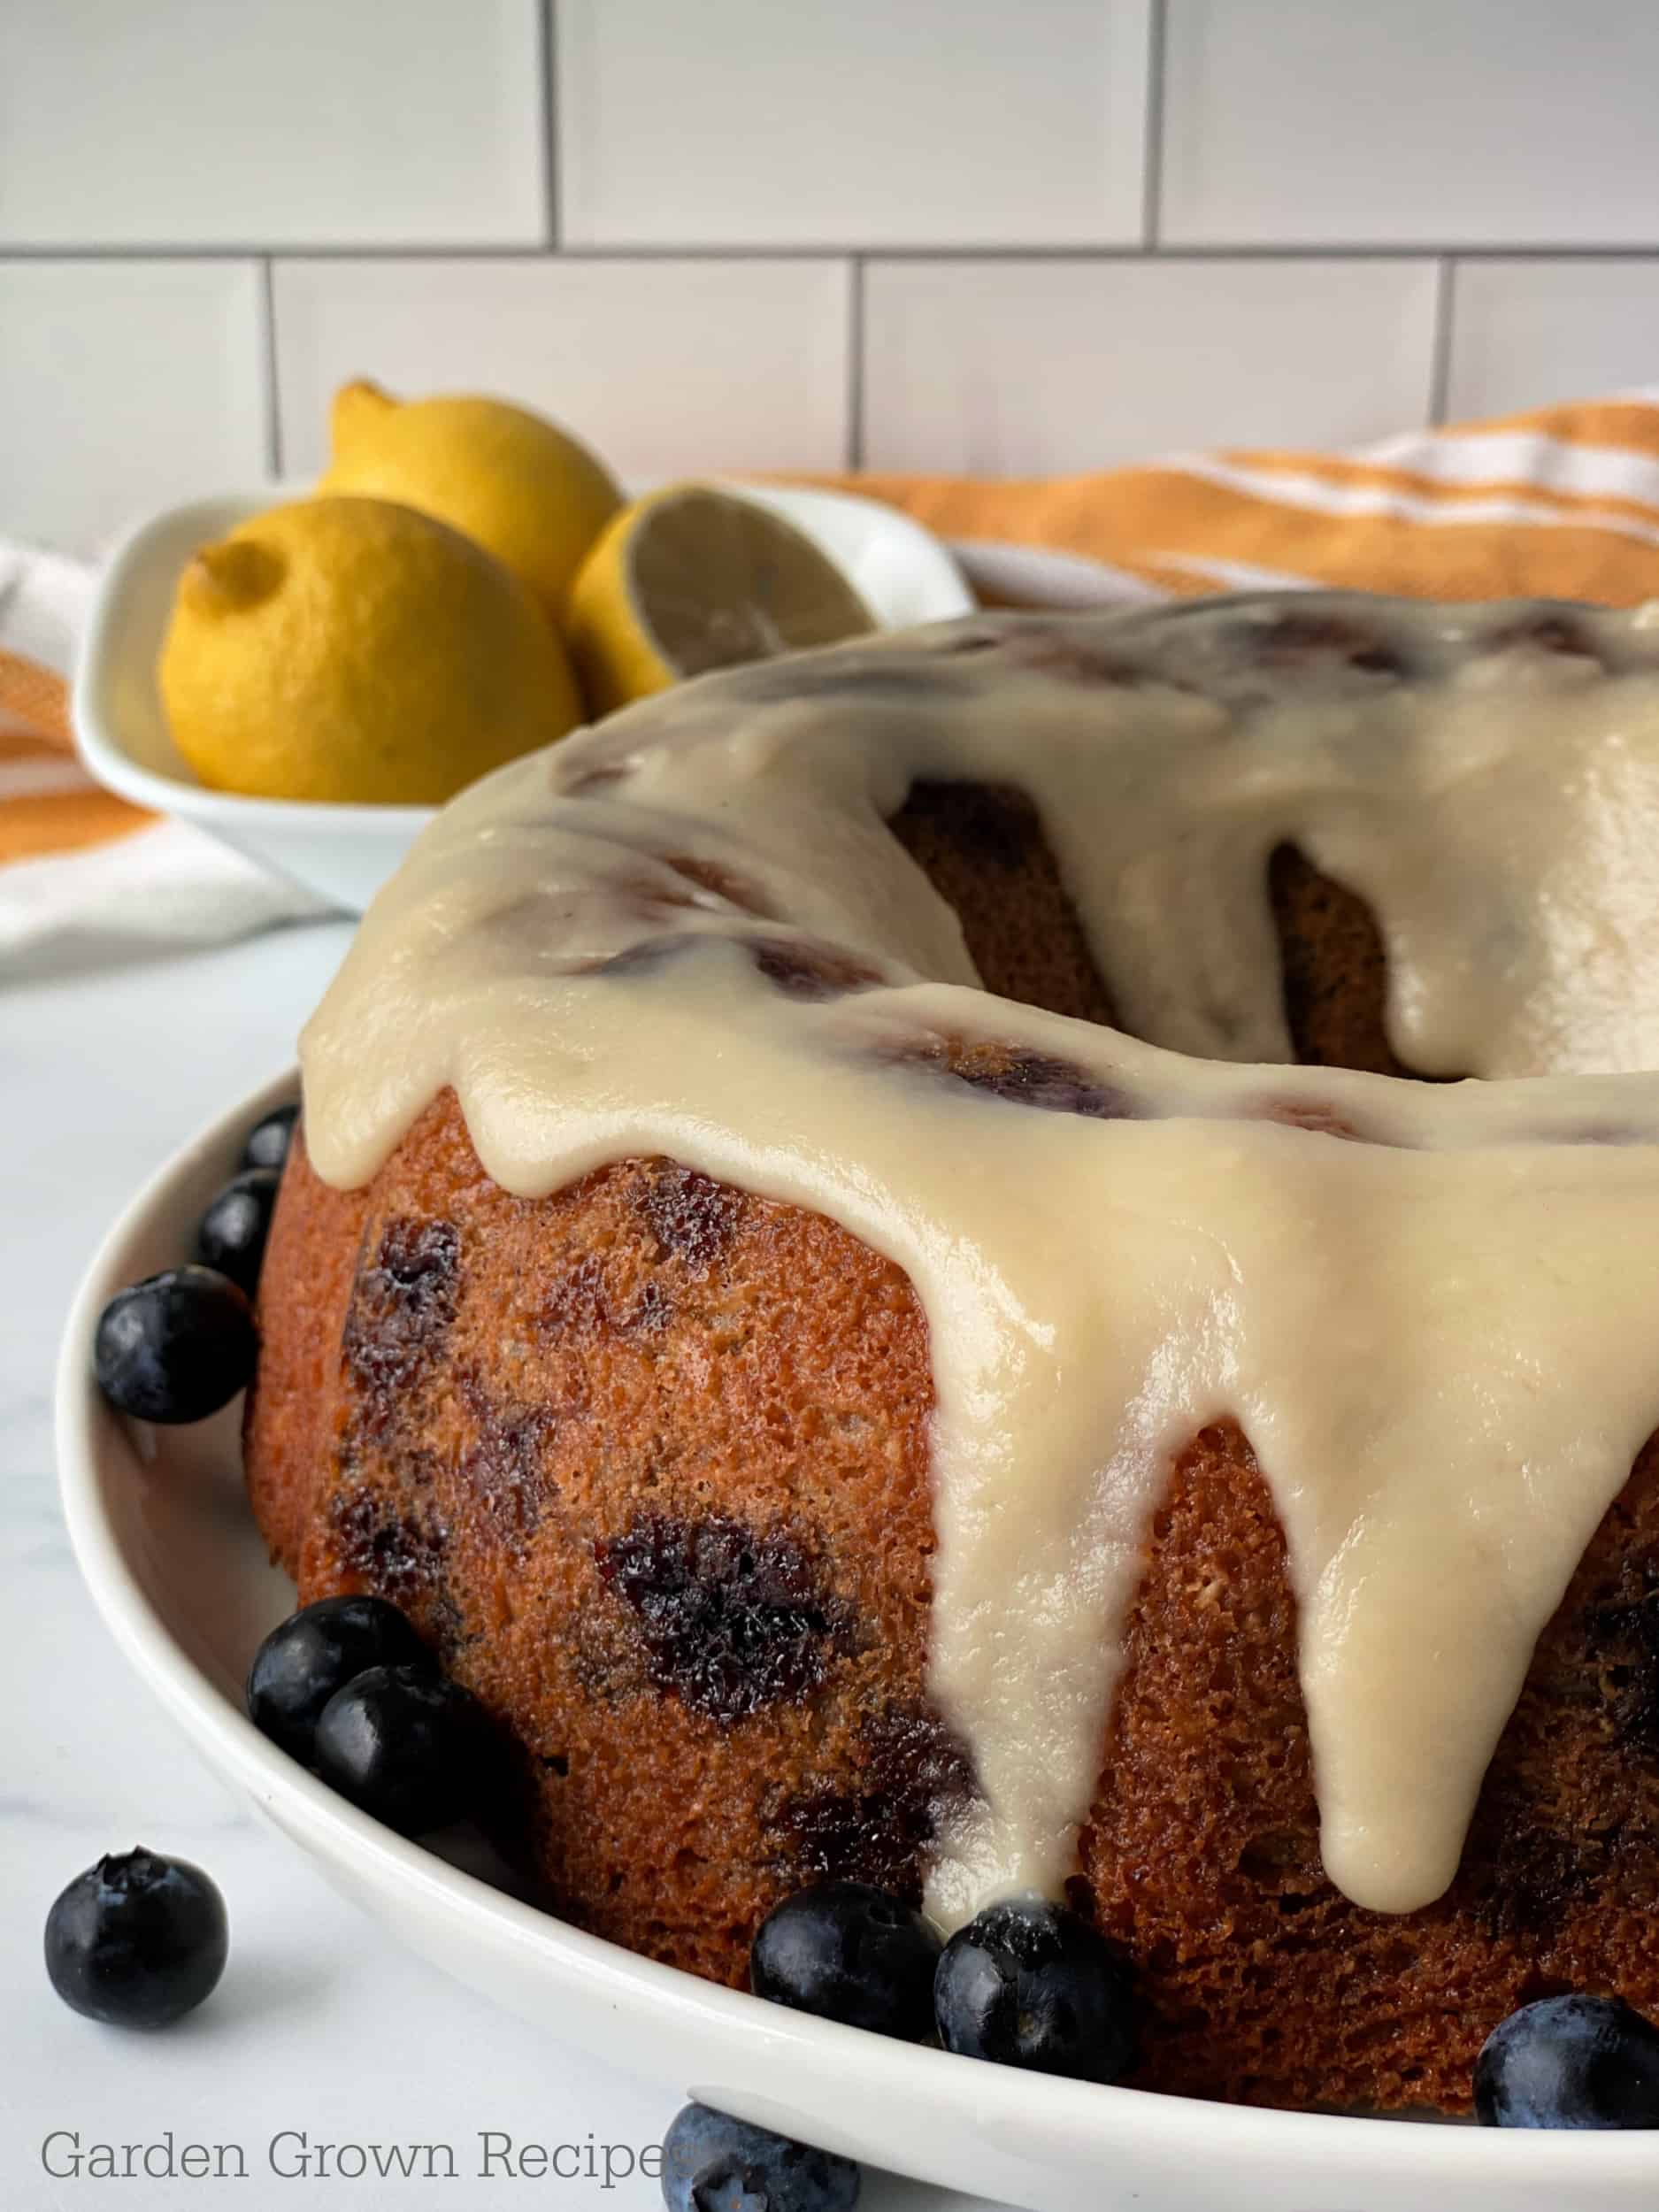 lemon Blueberry Bundt Cake Recipe with Glaze icing